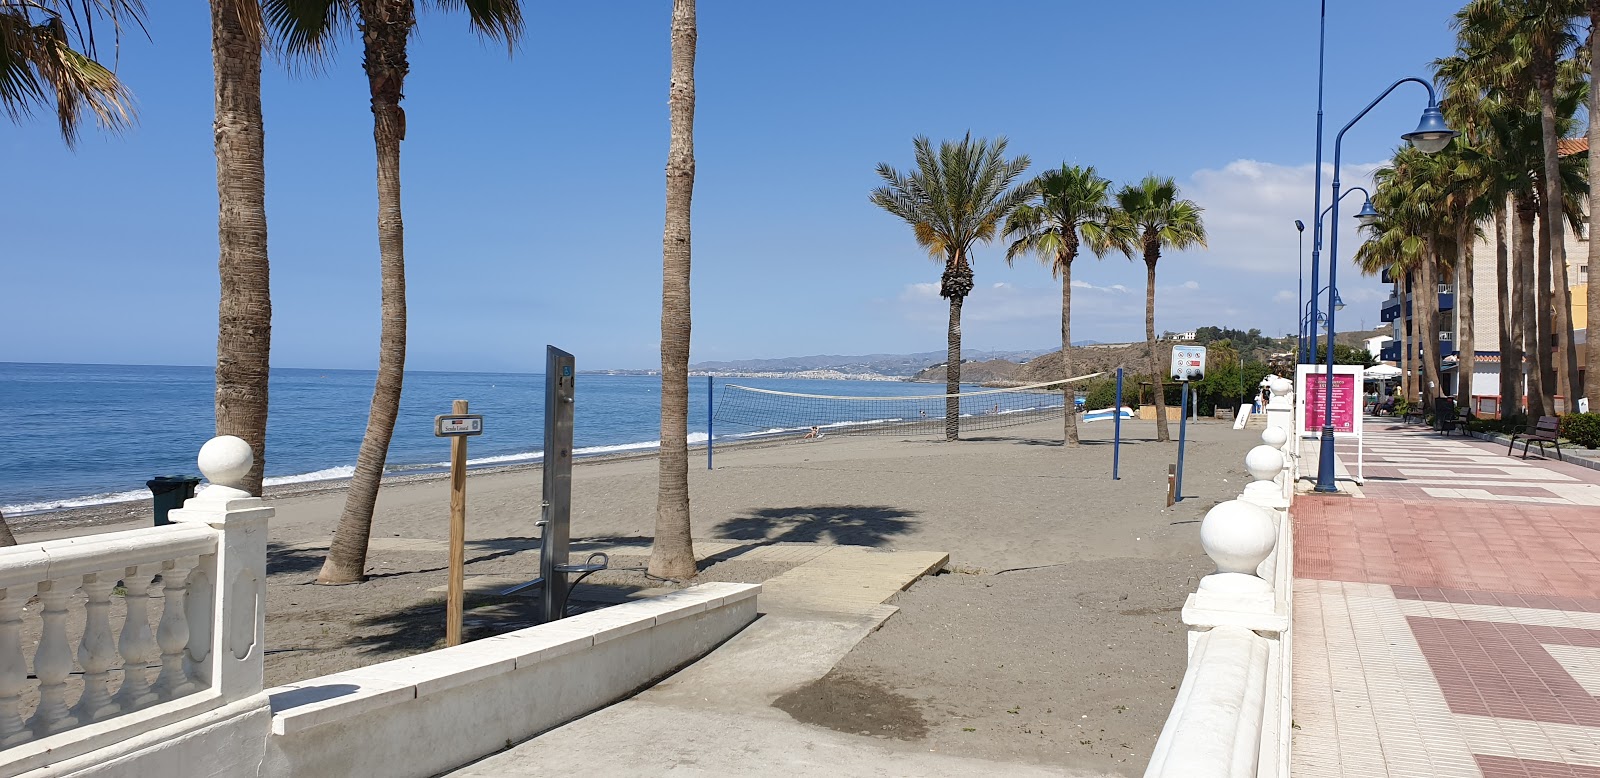 Φωτογραφία του Playa de el Morche και η εγκατάσταση